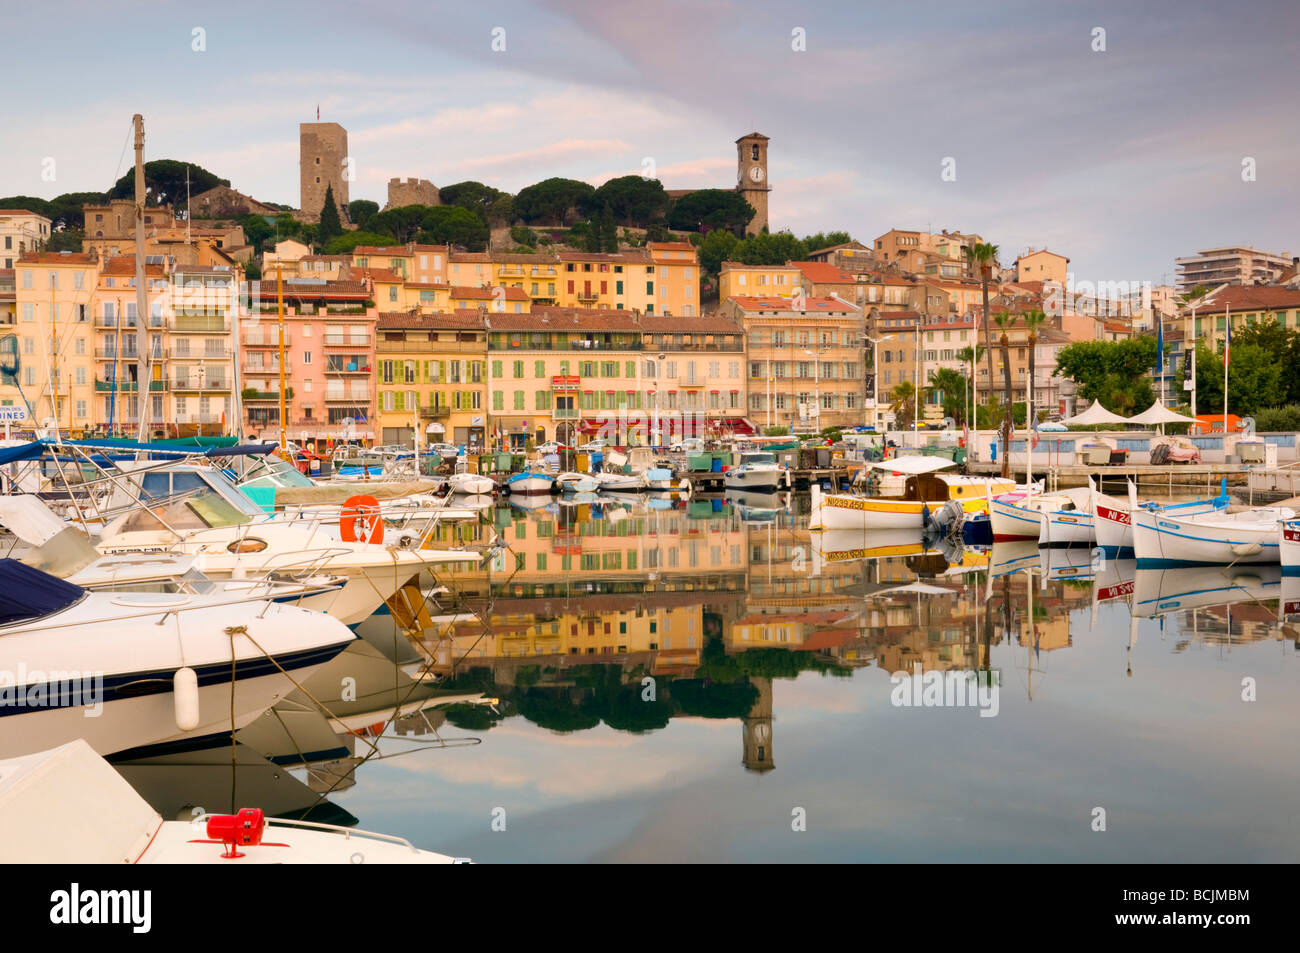 France, Provence-Alpes-Cote d'Azur, Cannes, Old Town, Le Suquet, Vieux Port (Old Harbour) Stock Photo